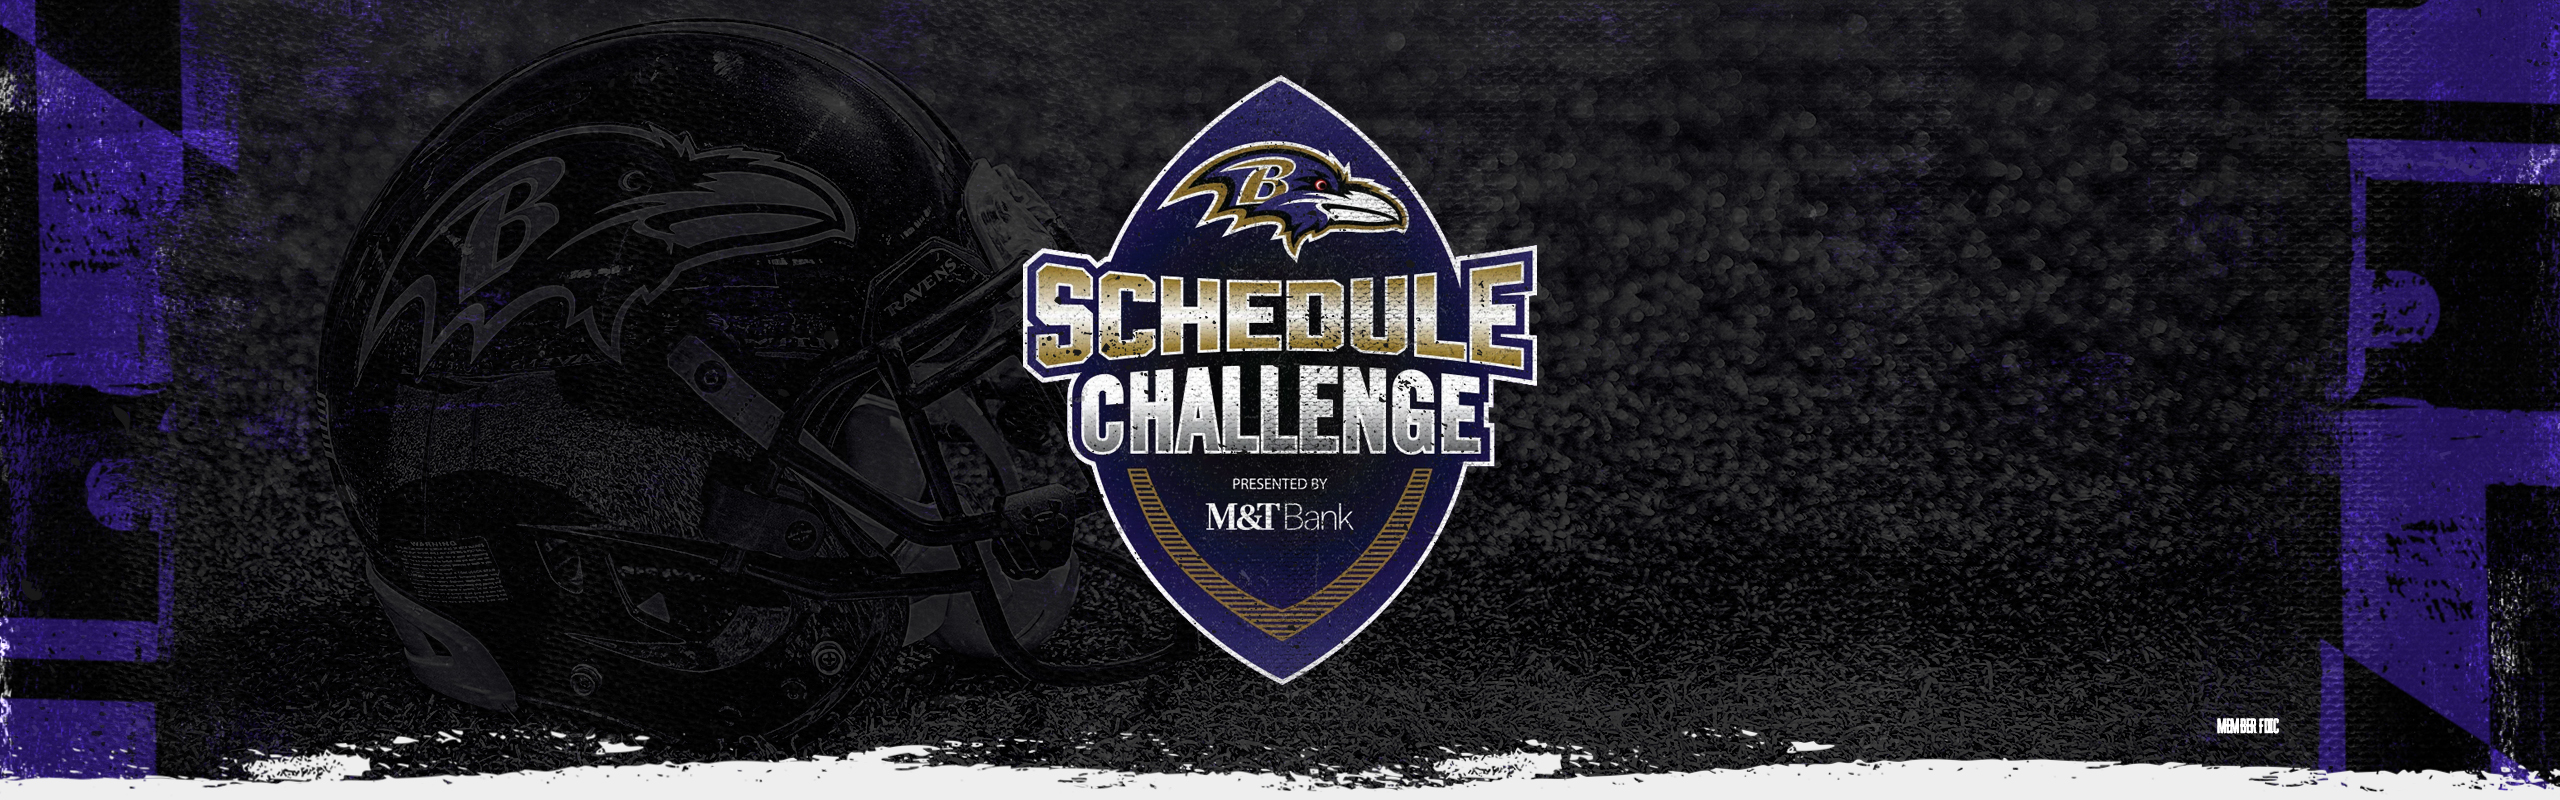 Ravens Schedule Challenge  Baltimore Ravens –